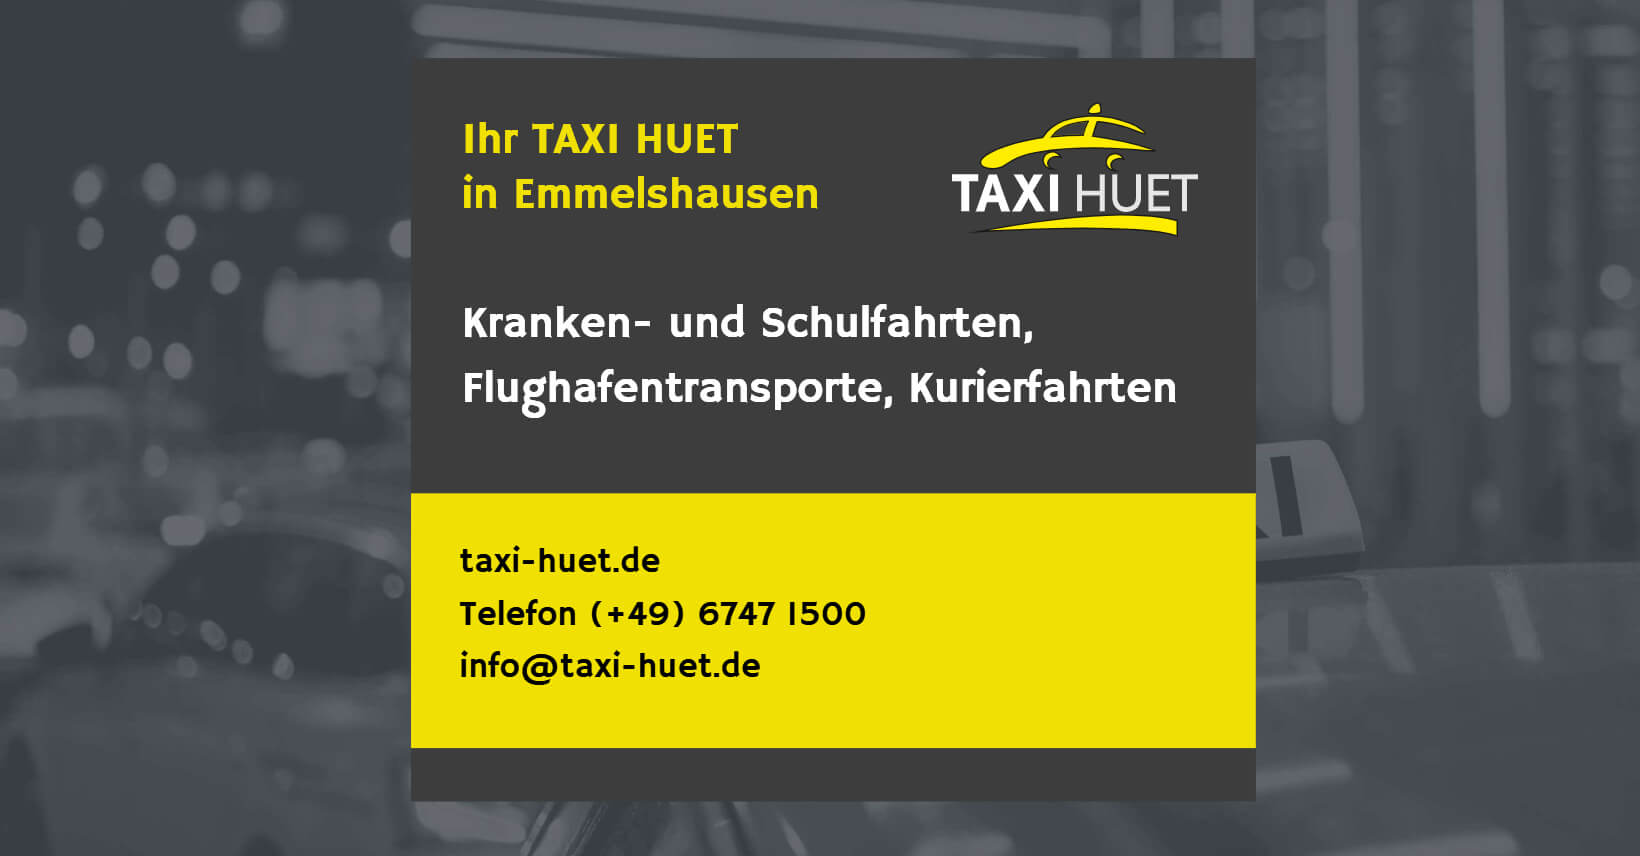 (c) Taxi-huet.de